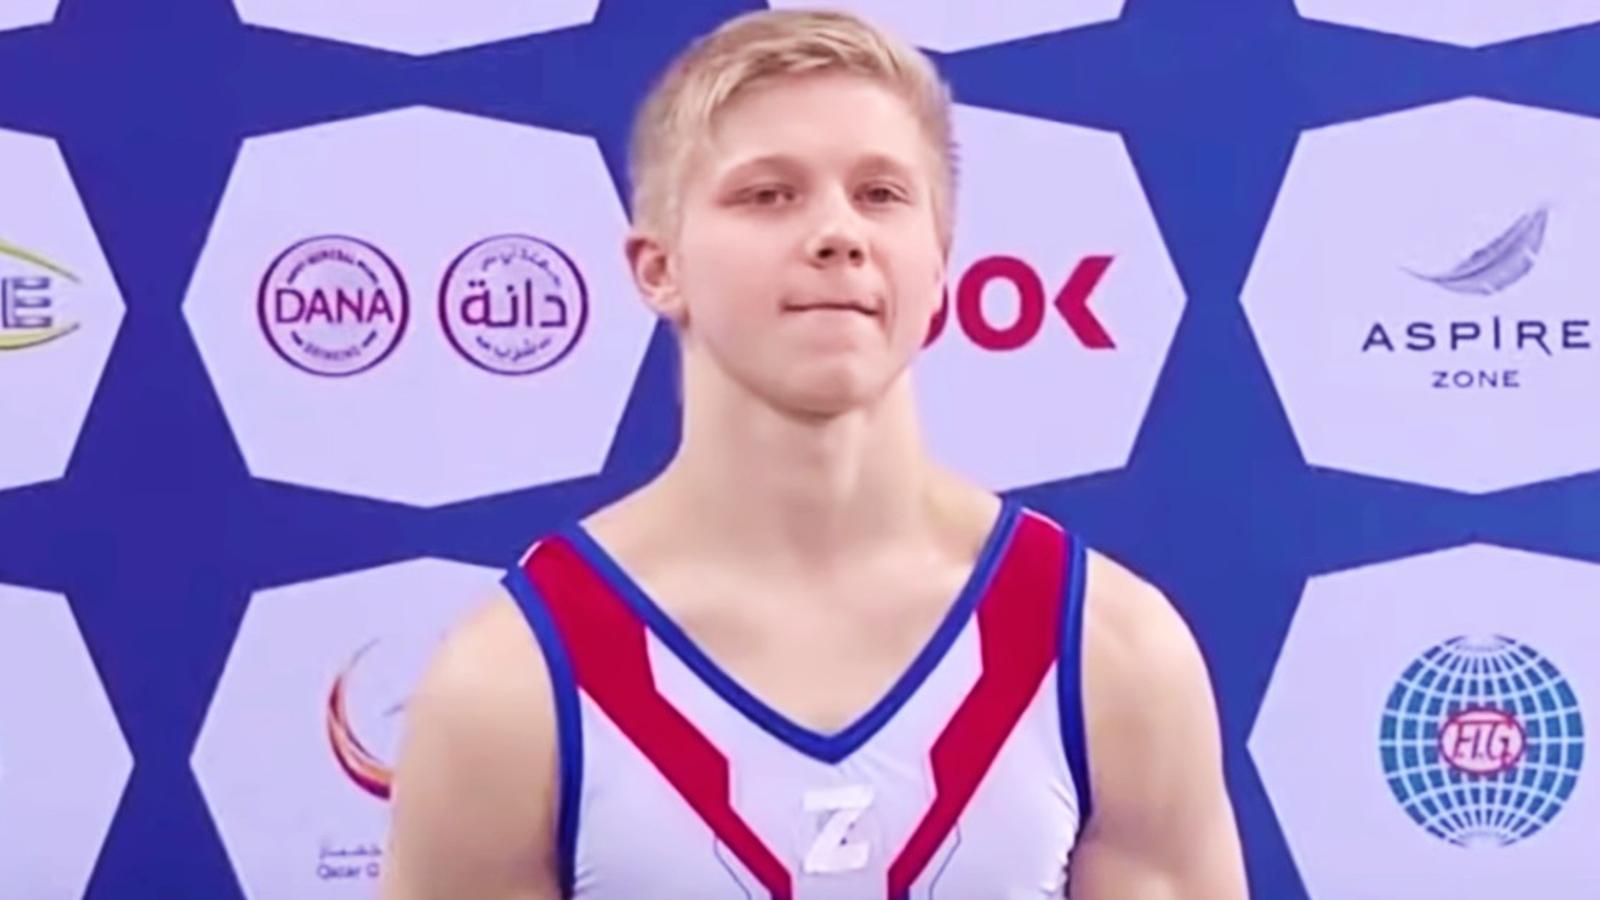 Le gymnaste russe qui a affiché son soutien à Poutine brise le silence